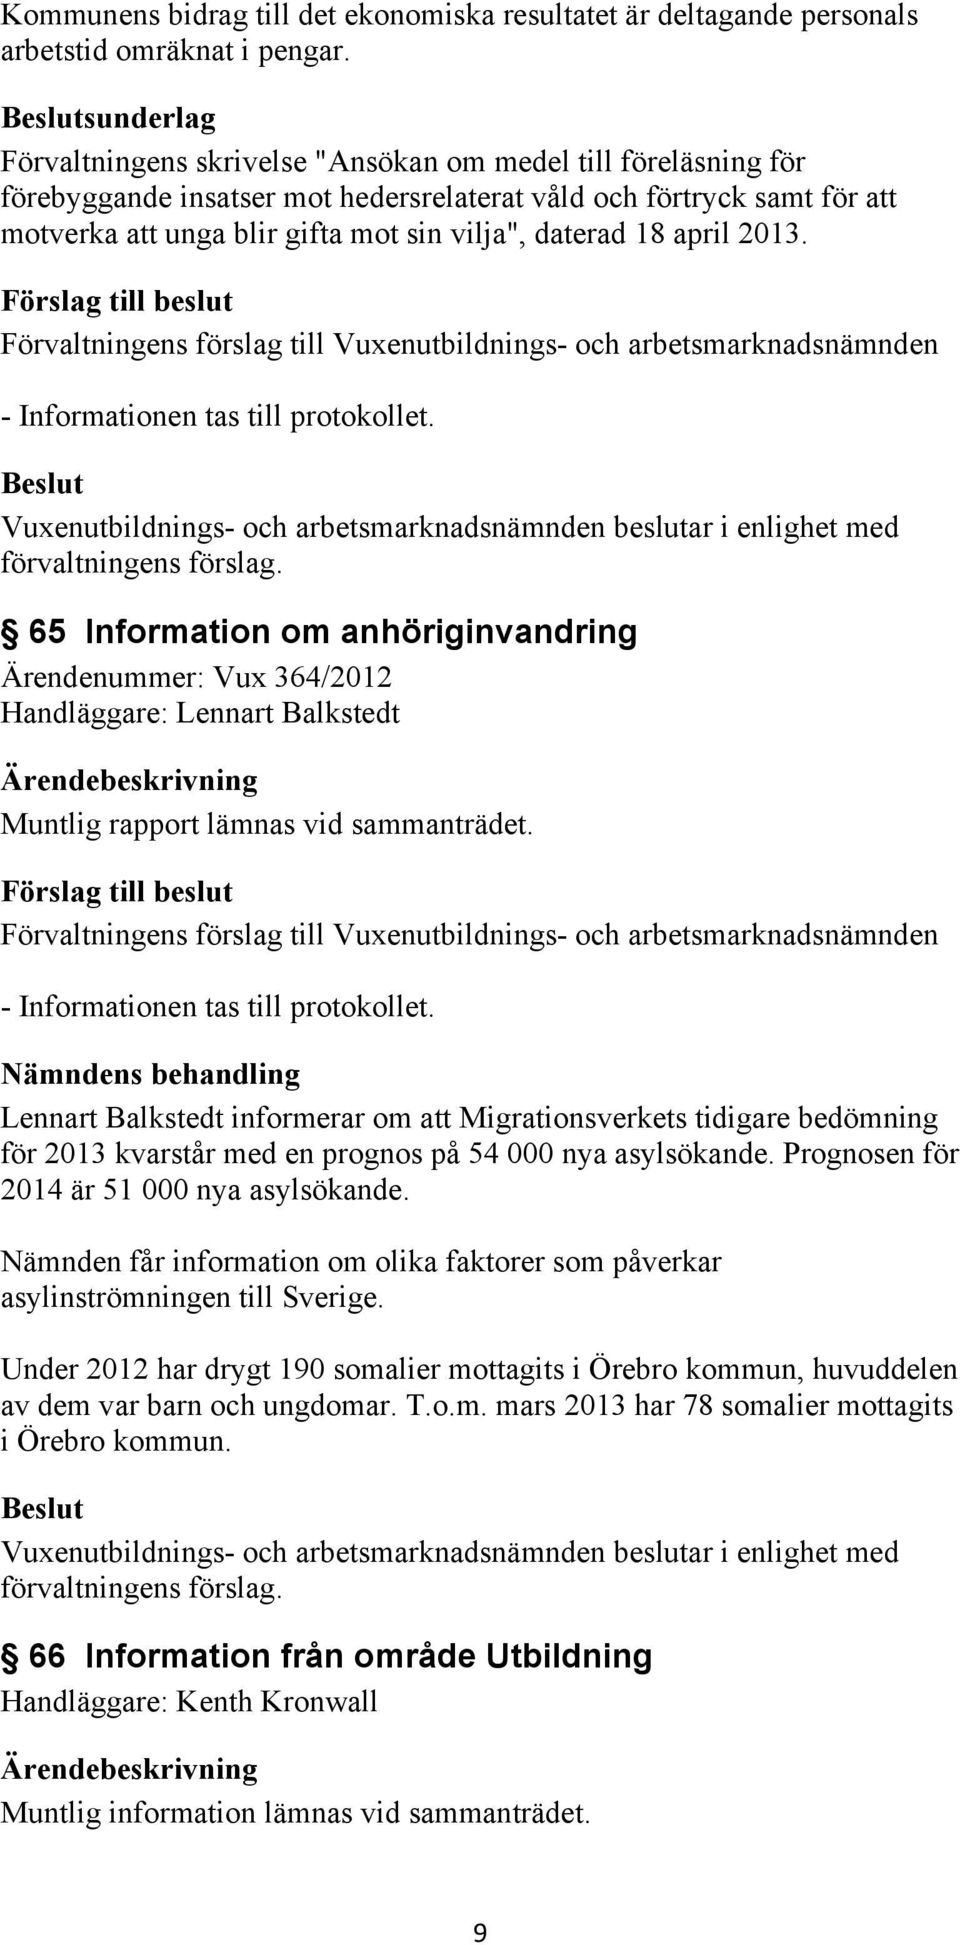 18 april 2013. - Informationen tas till protokollet. 65 Information om anhöriginvandring Ärendenummer: Vux 364/2012 Handläggare: Lennart Balkstedt Muntlig rapport lämnas vid sammanträdet.